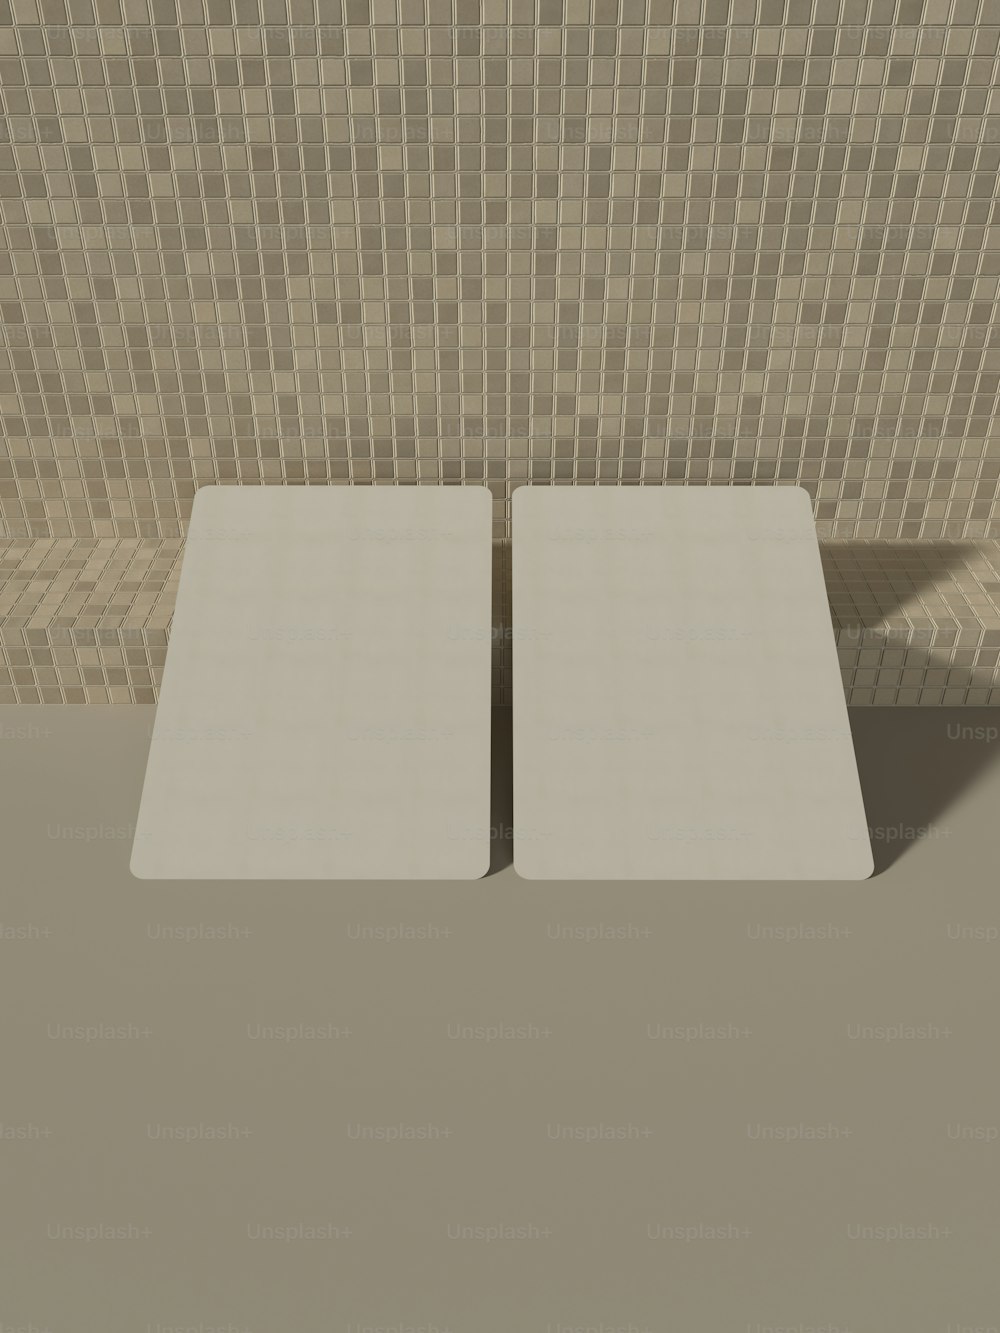 Un par de mesas cuadradas blancas frente a una pared de azulejos